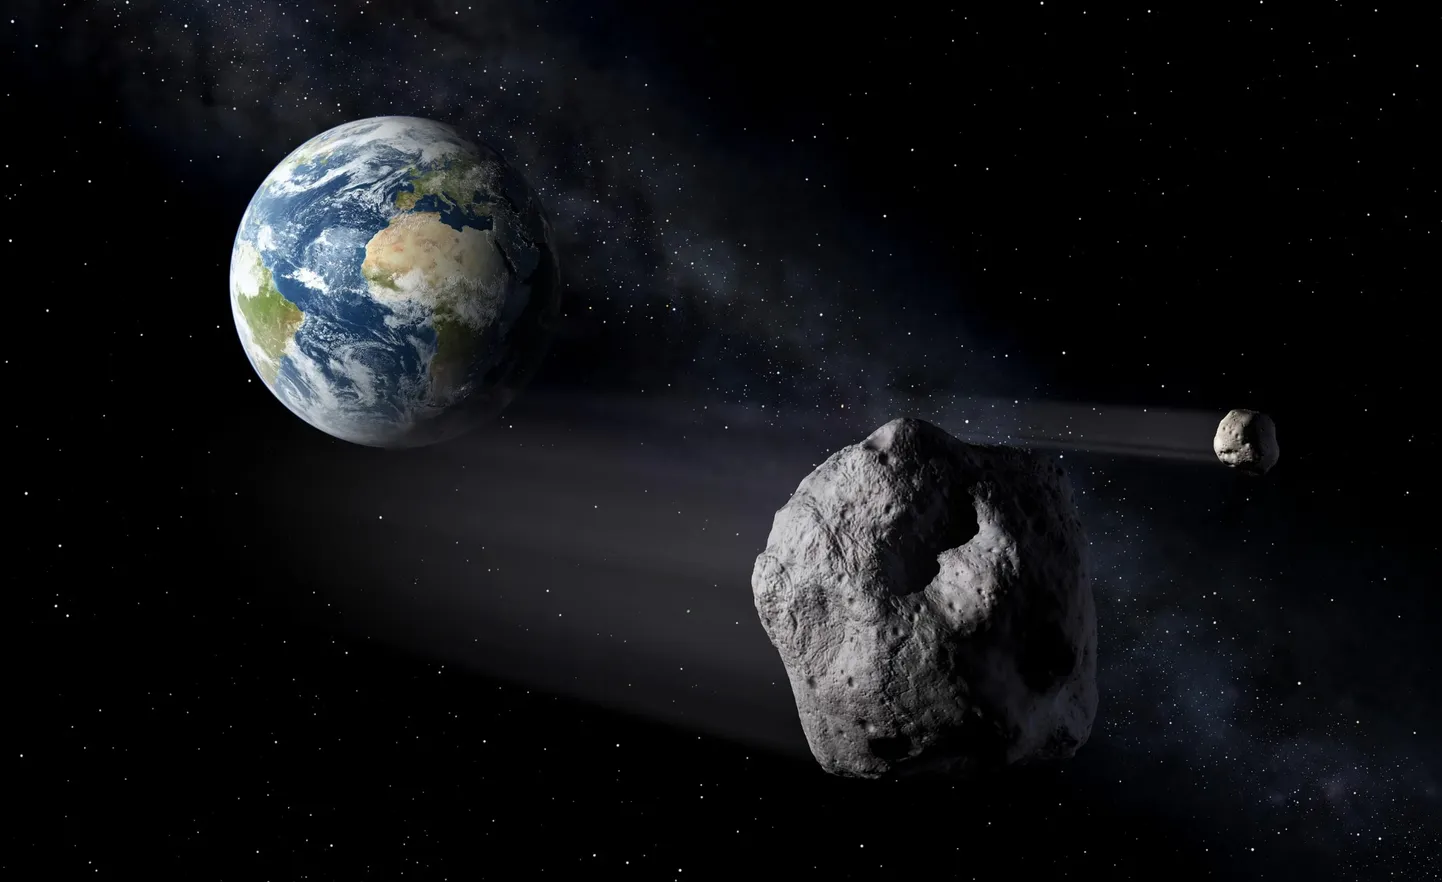 Астероид, получивший название 2011 UL21, пролетит мимо Земли на расстоянии 6,6 миллиона километров, что сделает его одним из крупнейших космических камней, приблизившихся так близко к нашей планете за 125 лет.